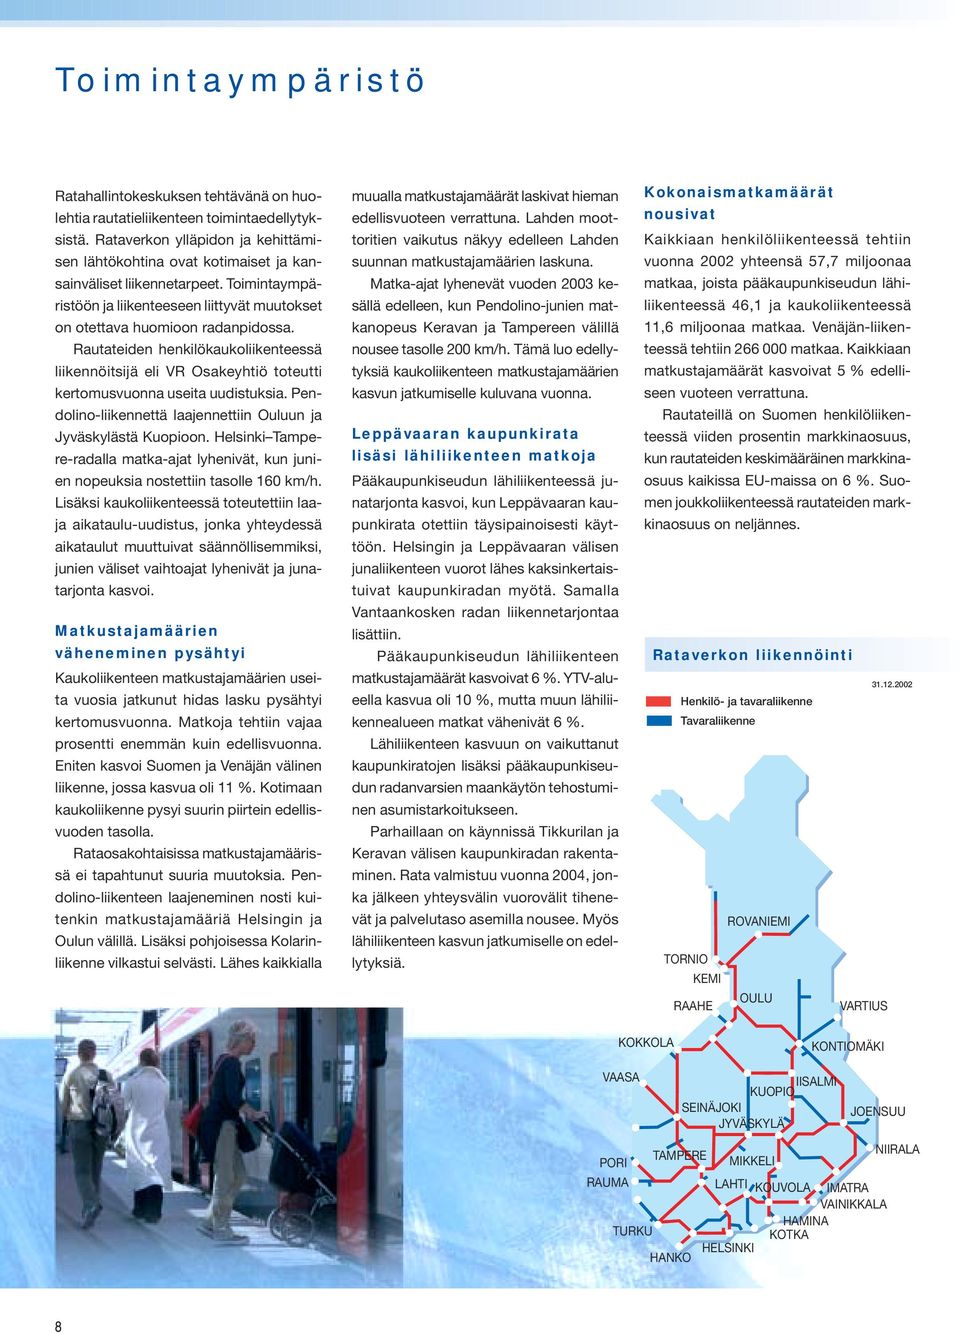 Rautateiden henkilökaukoliikenteessä liikennöitsijä eli VR Osakeyhtiö toteutti kertomusvuonna useita uudistuksia. Pendolino-liikennettä laajennettiin Ouluun ja Jyväskylästä Kuopioon.